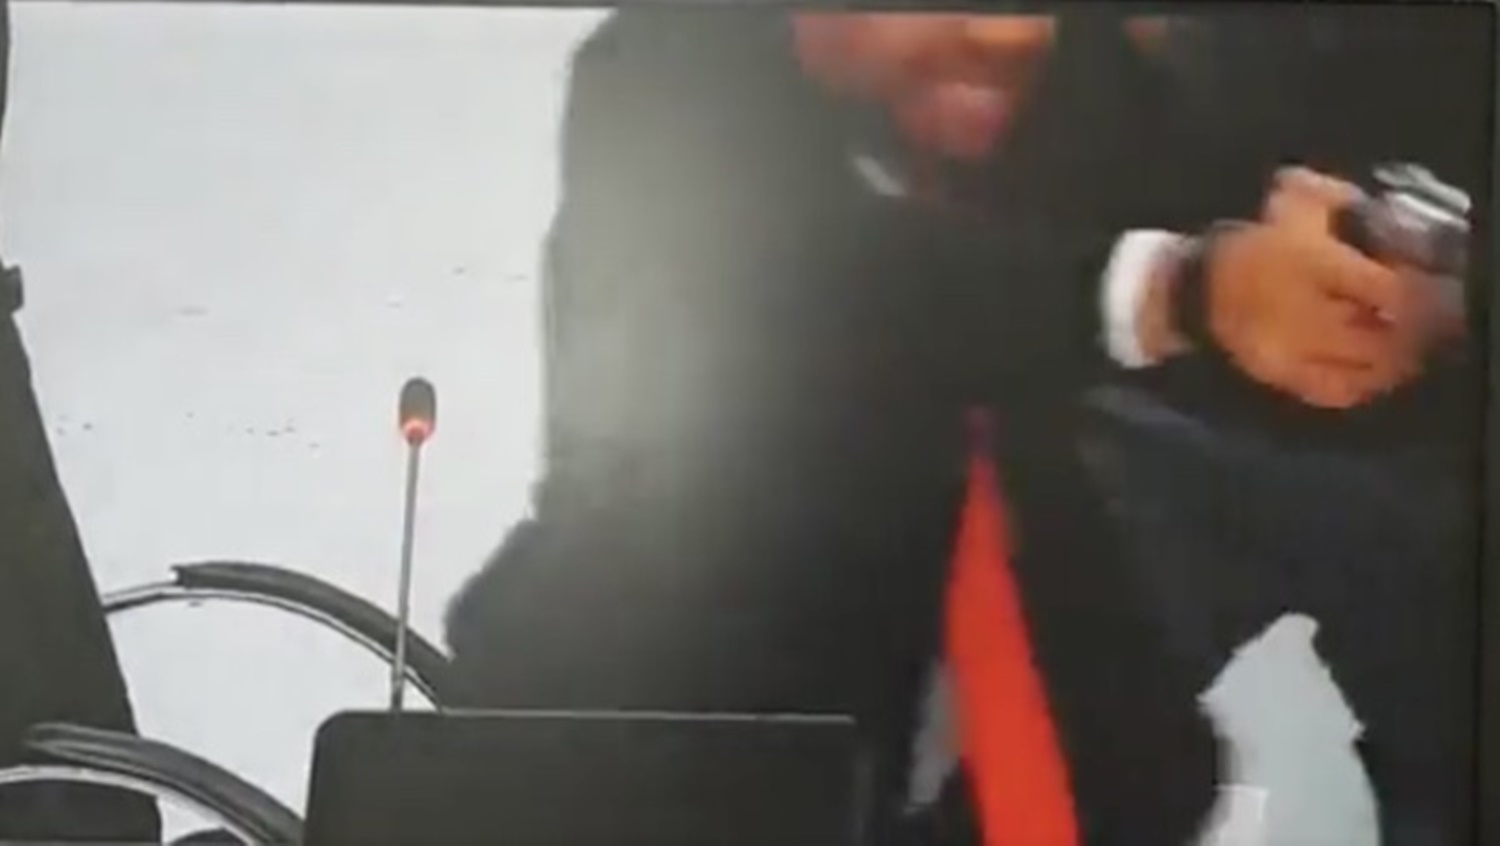 TUMULTO: Vereador aponta arma para colega durante sessão da Câmara